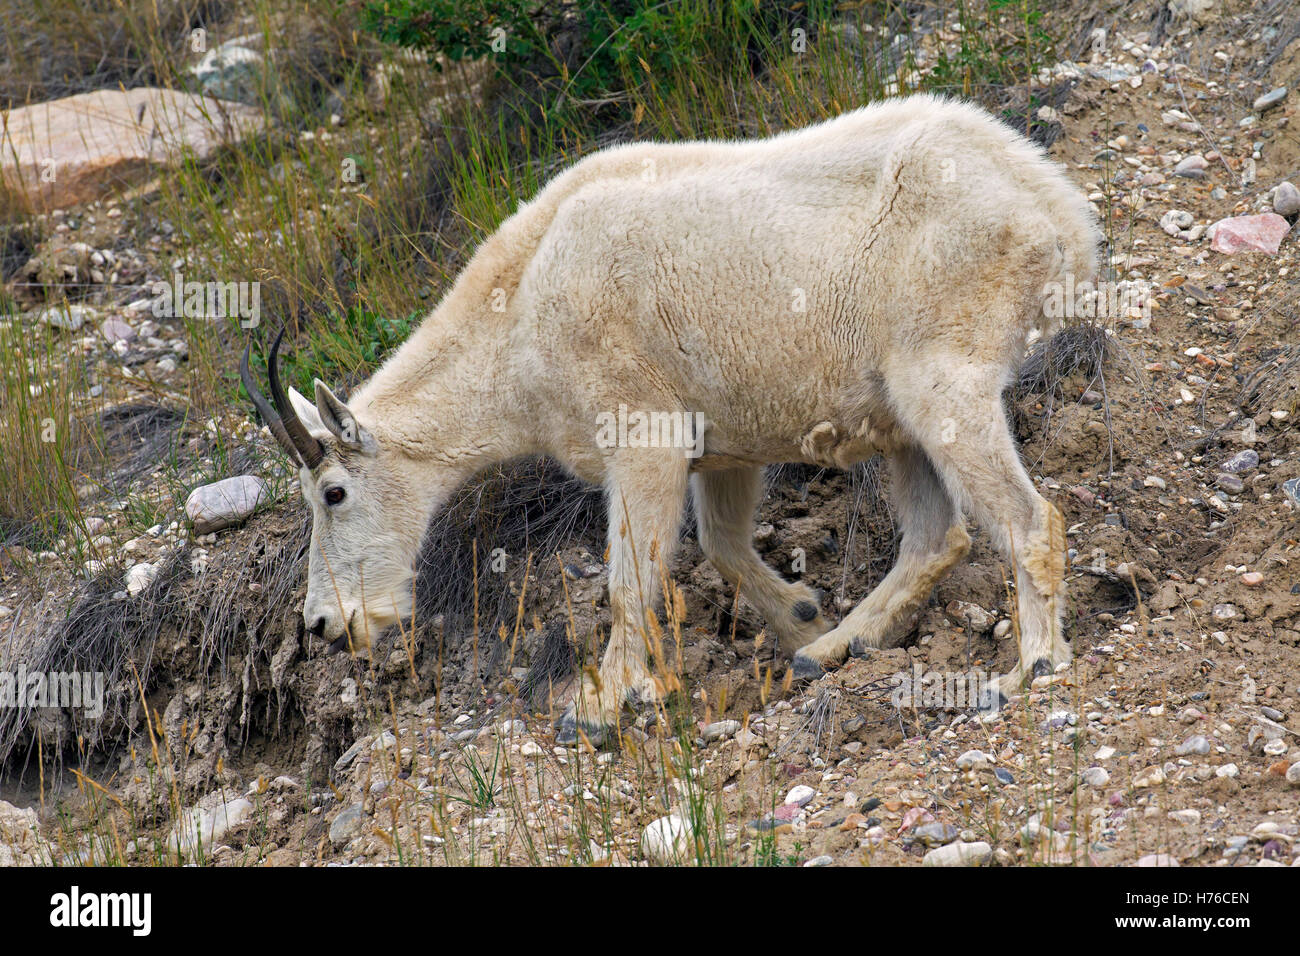 Chèvre des montagnes Rocheuses (Oreamnos americanus) en quête de femelles pente rocheuse de montagne, le Parc National Jasper, Alberta, Canada Banque D'Images